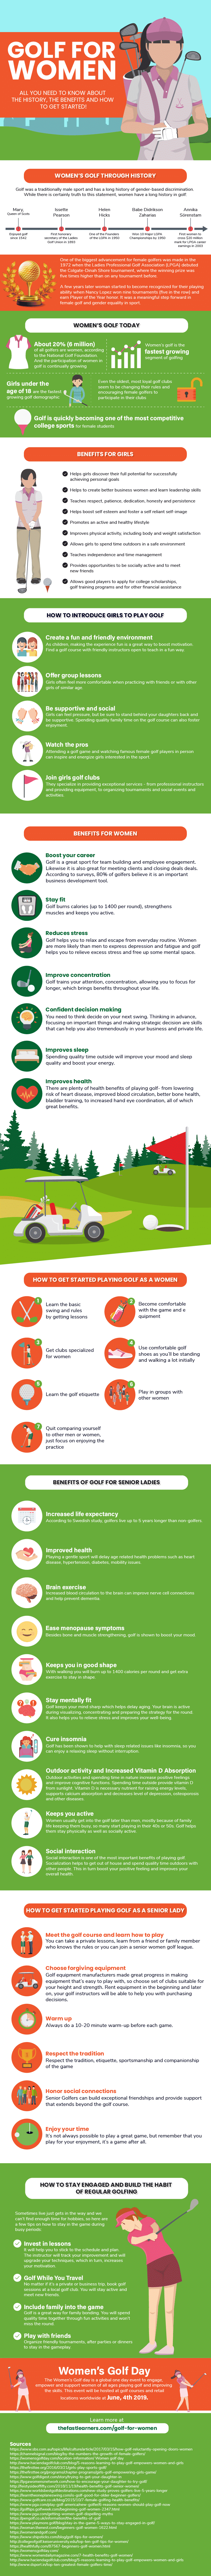 golf for women guide